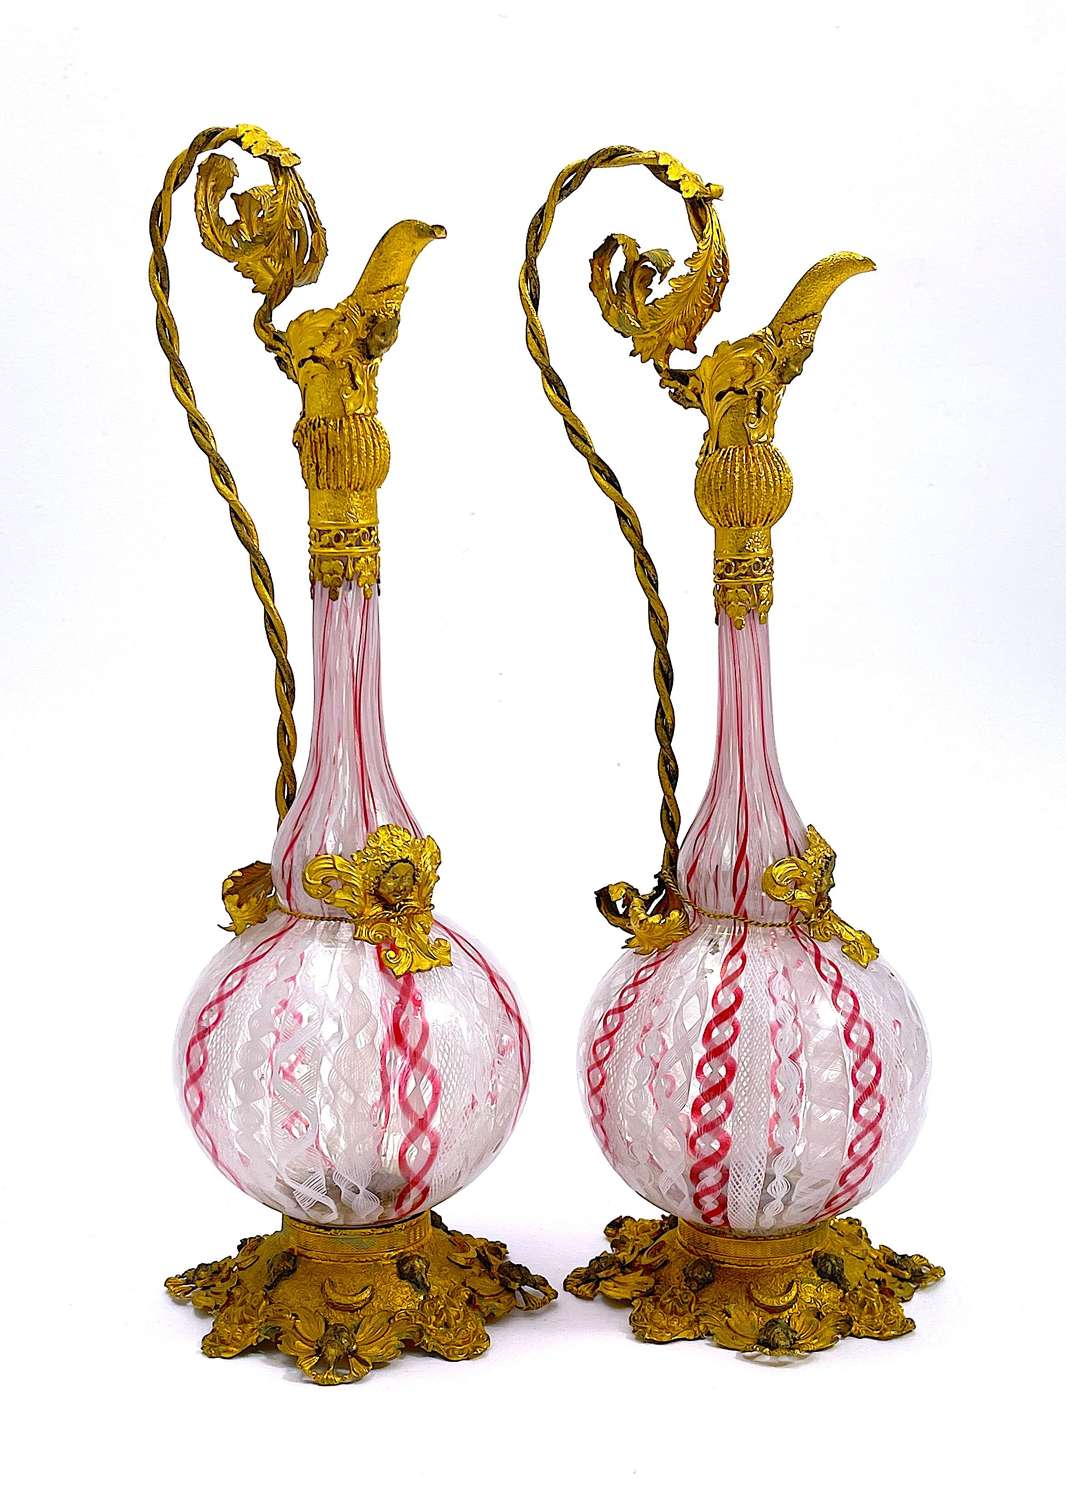 Exquisite Pair of Antique Venetian Glass Vases with Lattice Filigree